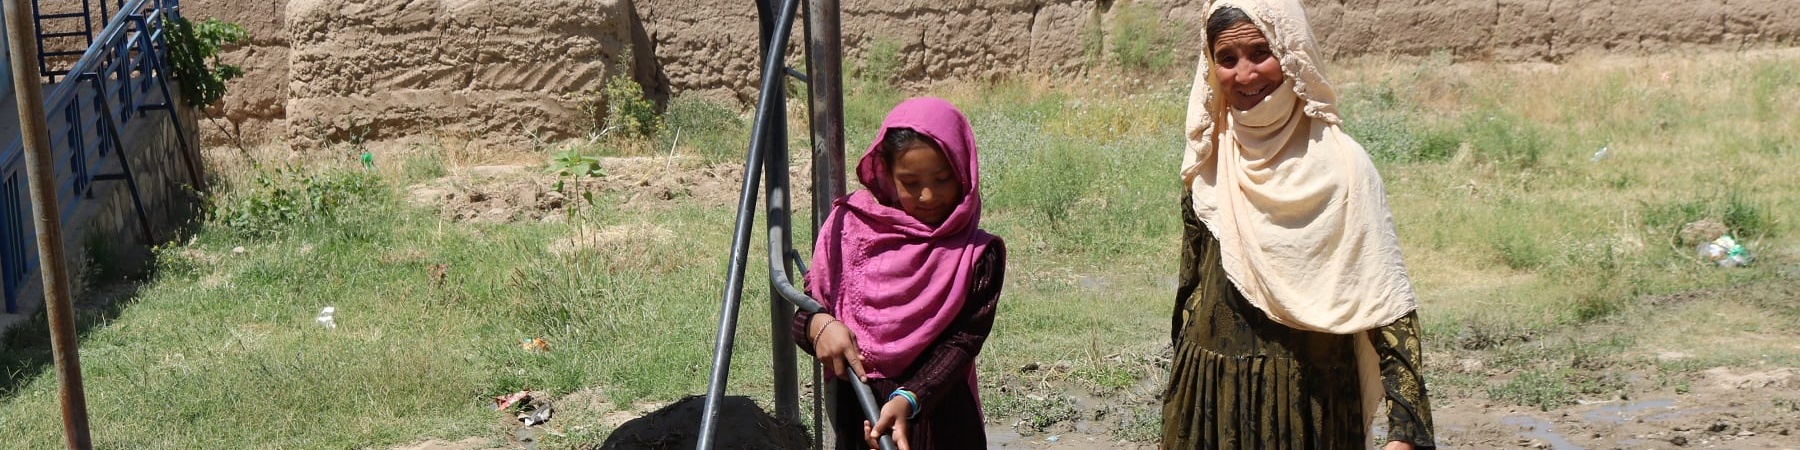 Due bambine afghane prendono acqua da una pompa in mezzo a un campo brullo